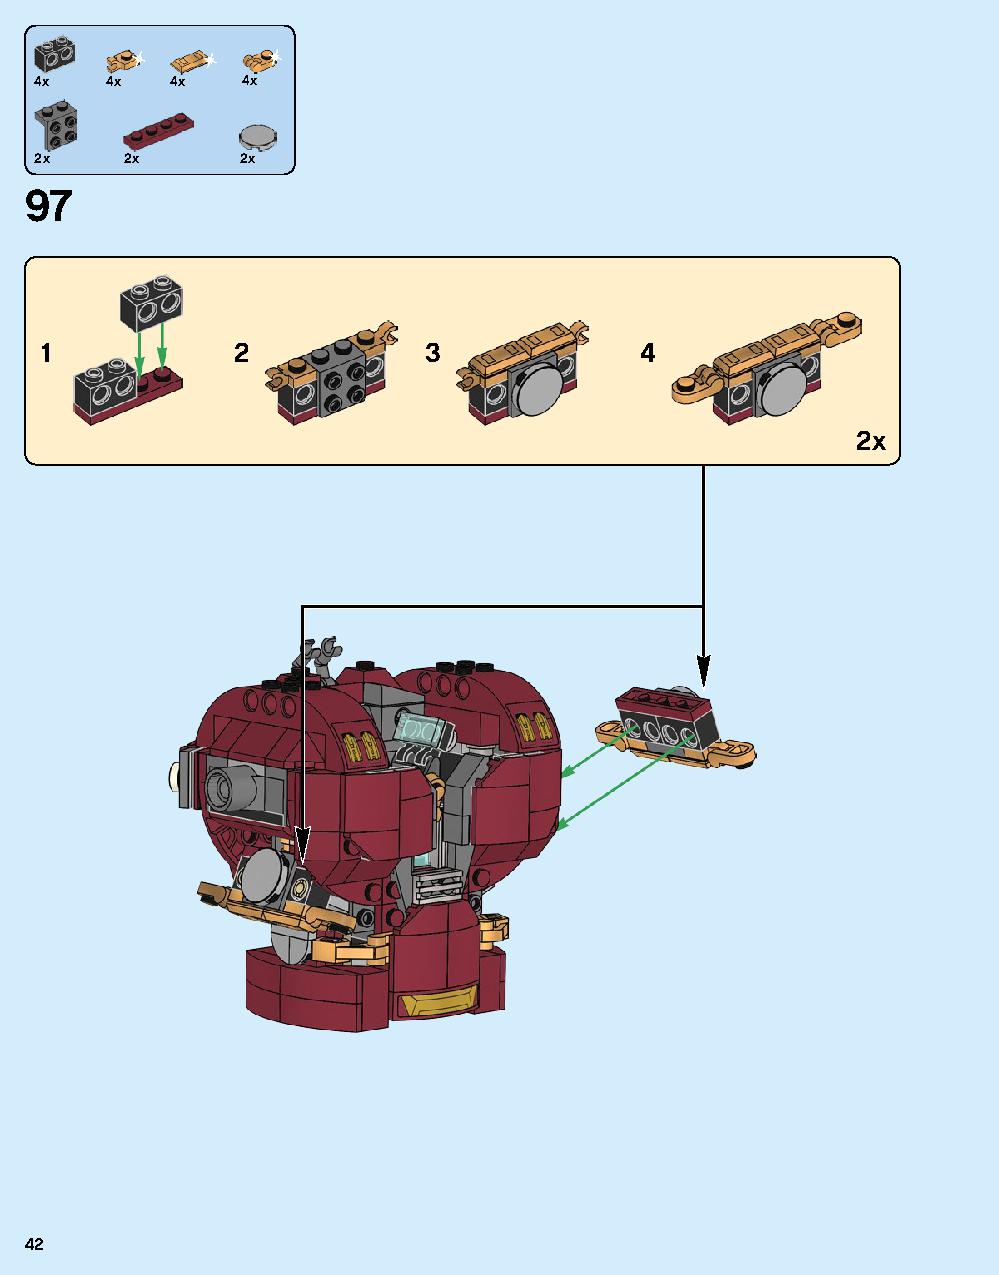 어벤져스 헐크버스터: 울트론 에디션 76105 레고 세트 제품정보 레고 조립설명서 42 page